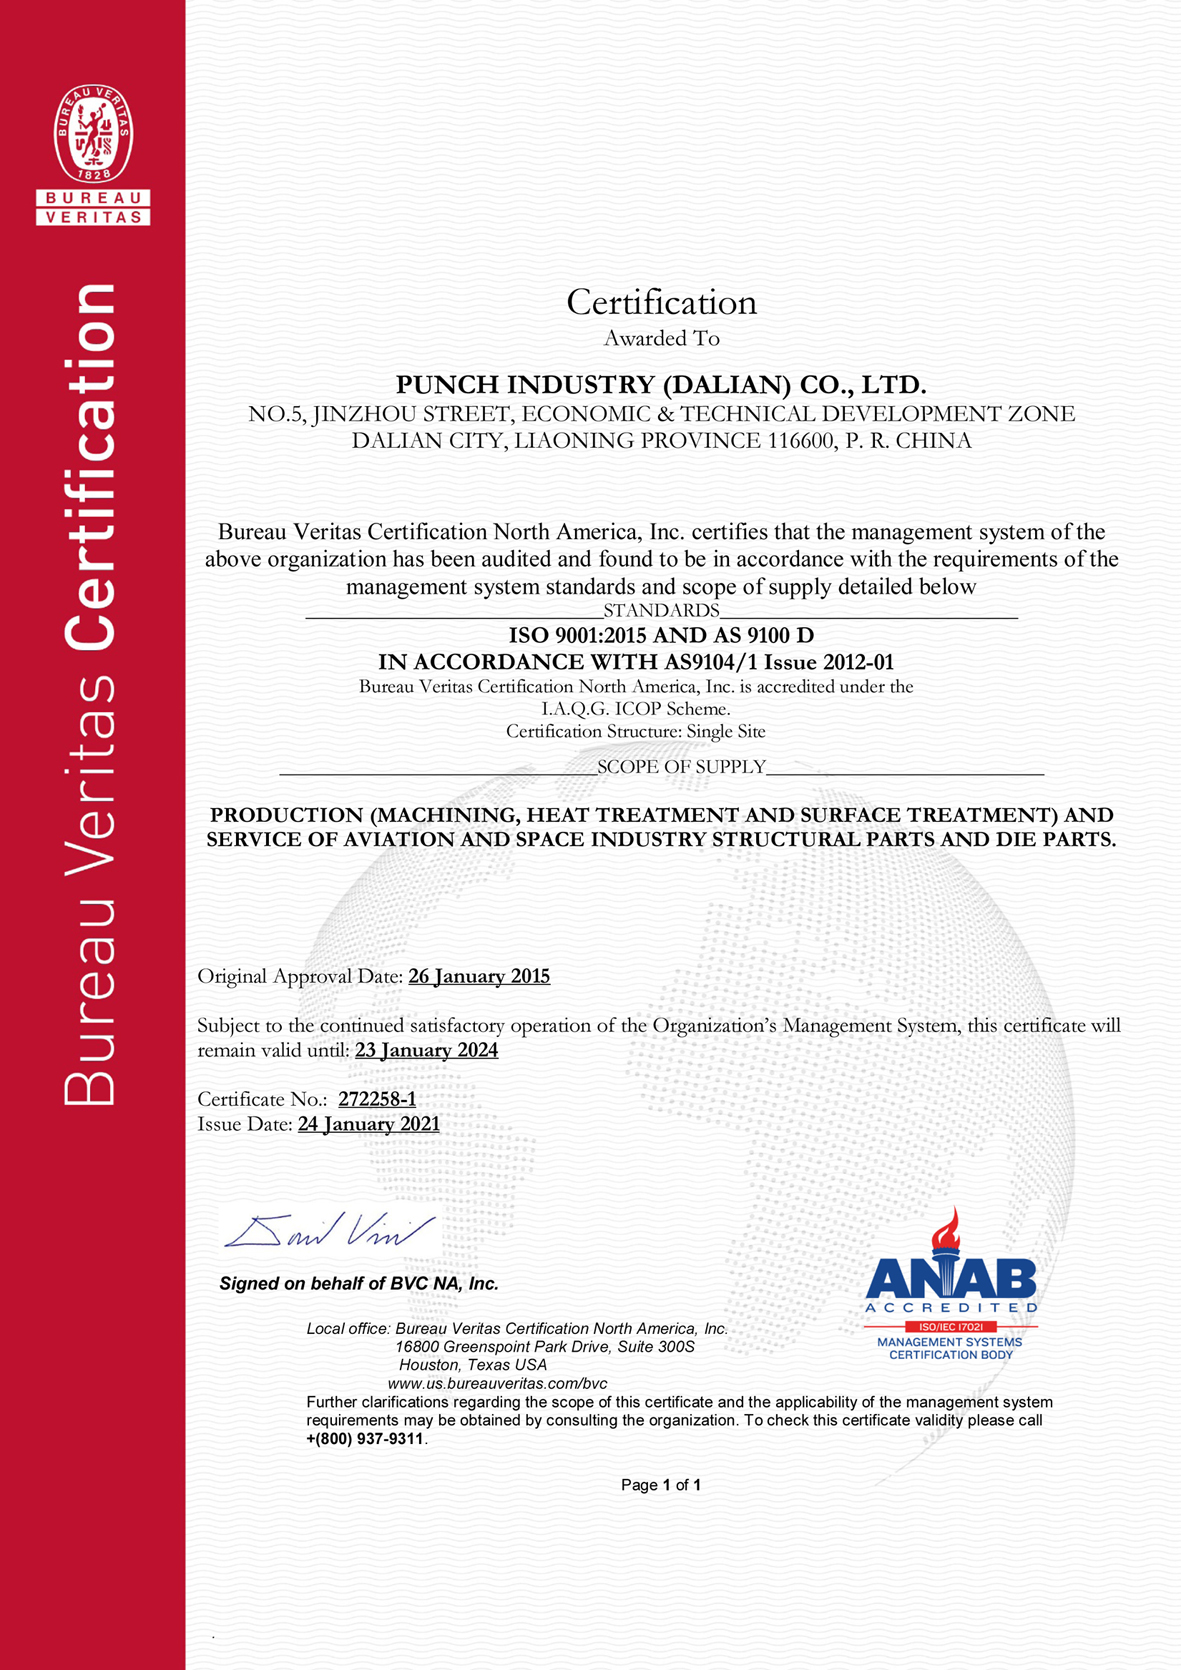 AS certificate.jpg